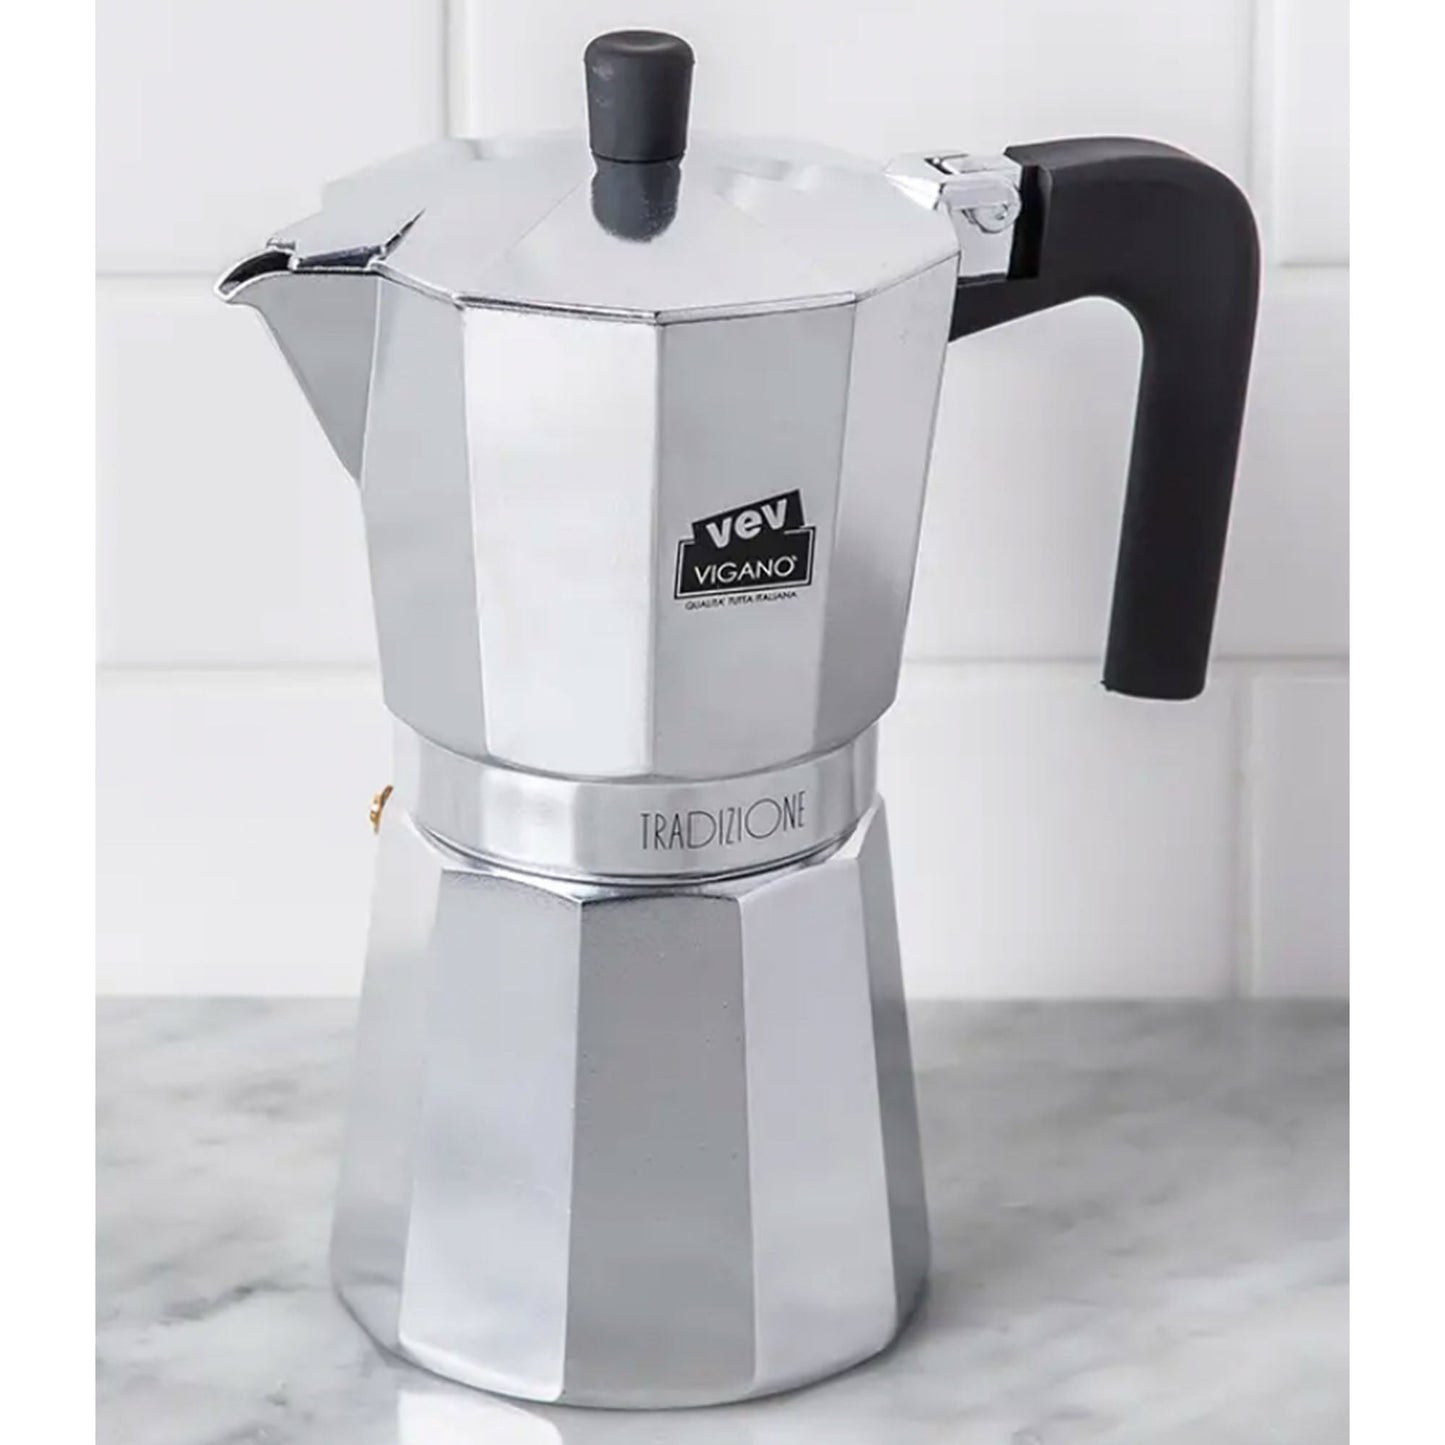 Vev Moka Espresso Maker 9 Cup